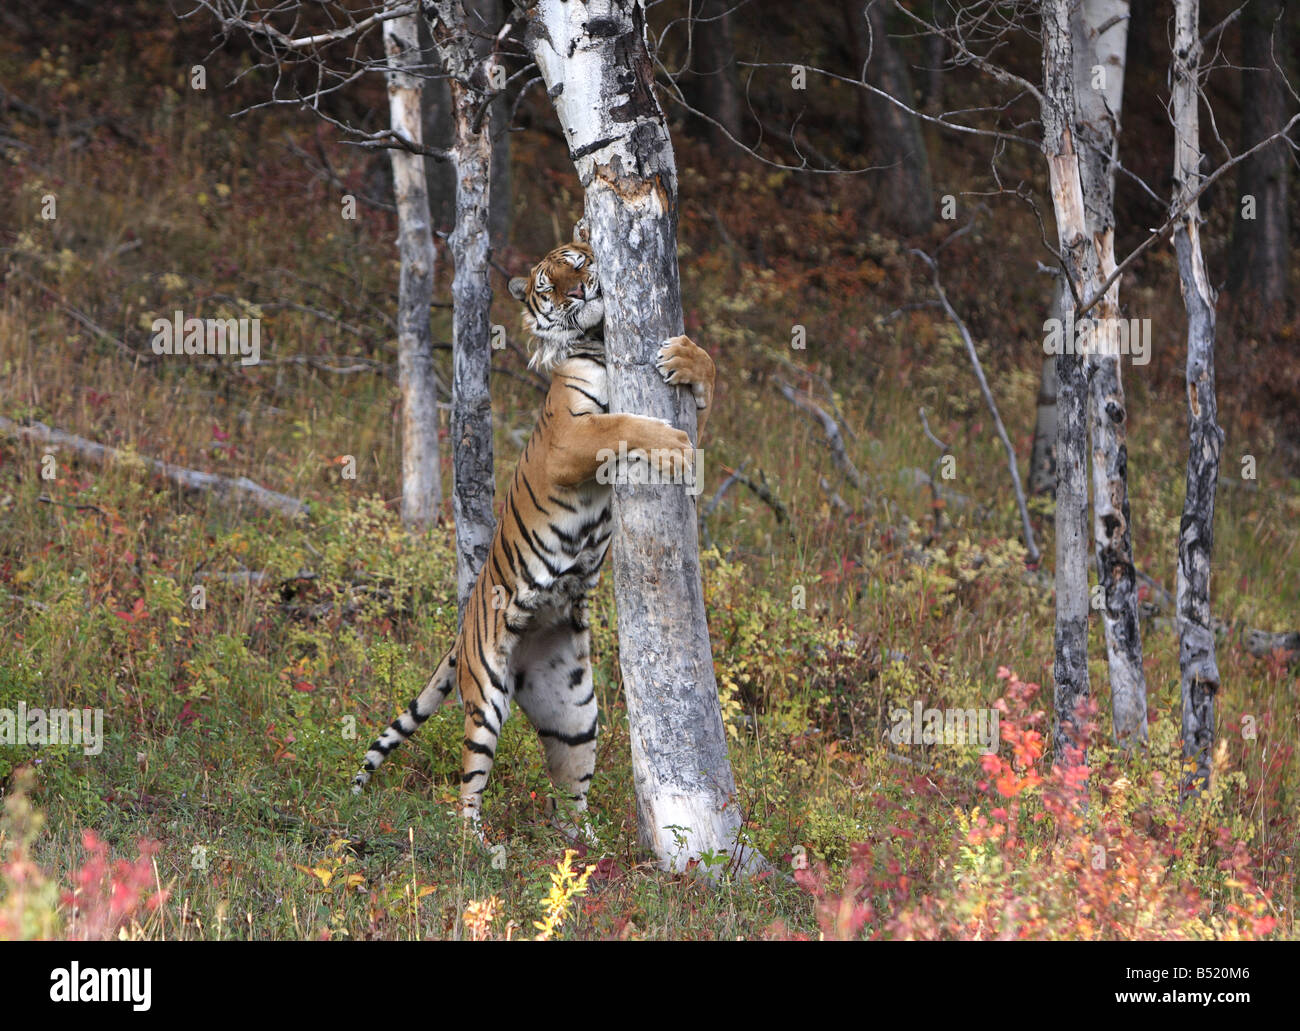 Tigre Siberiana, Panthera tigris altaica, profumo albero di marcatura Foto Stock